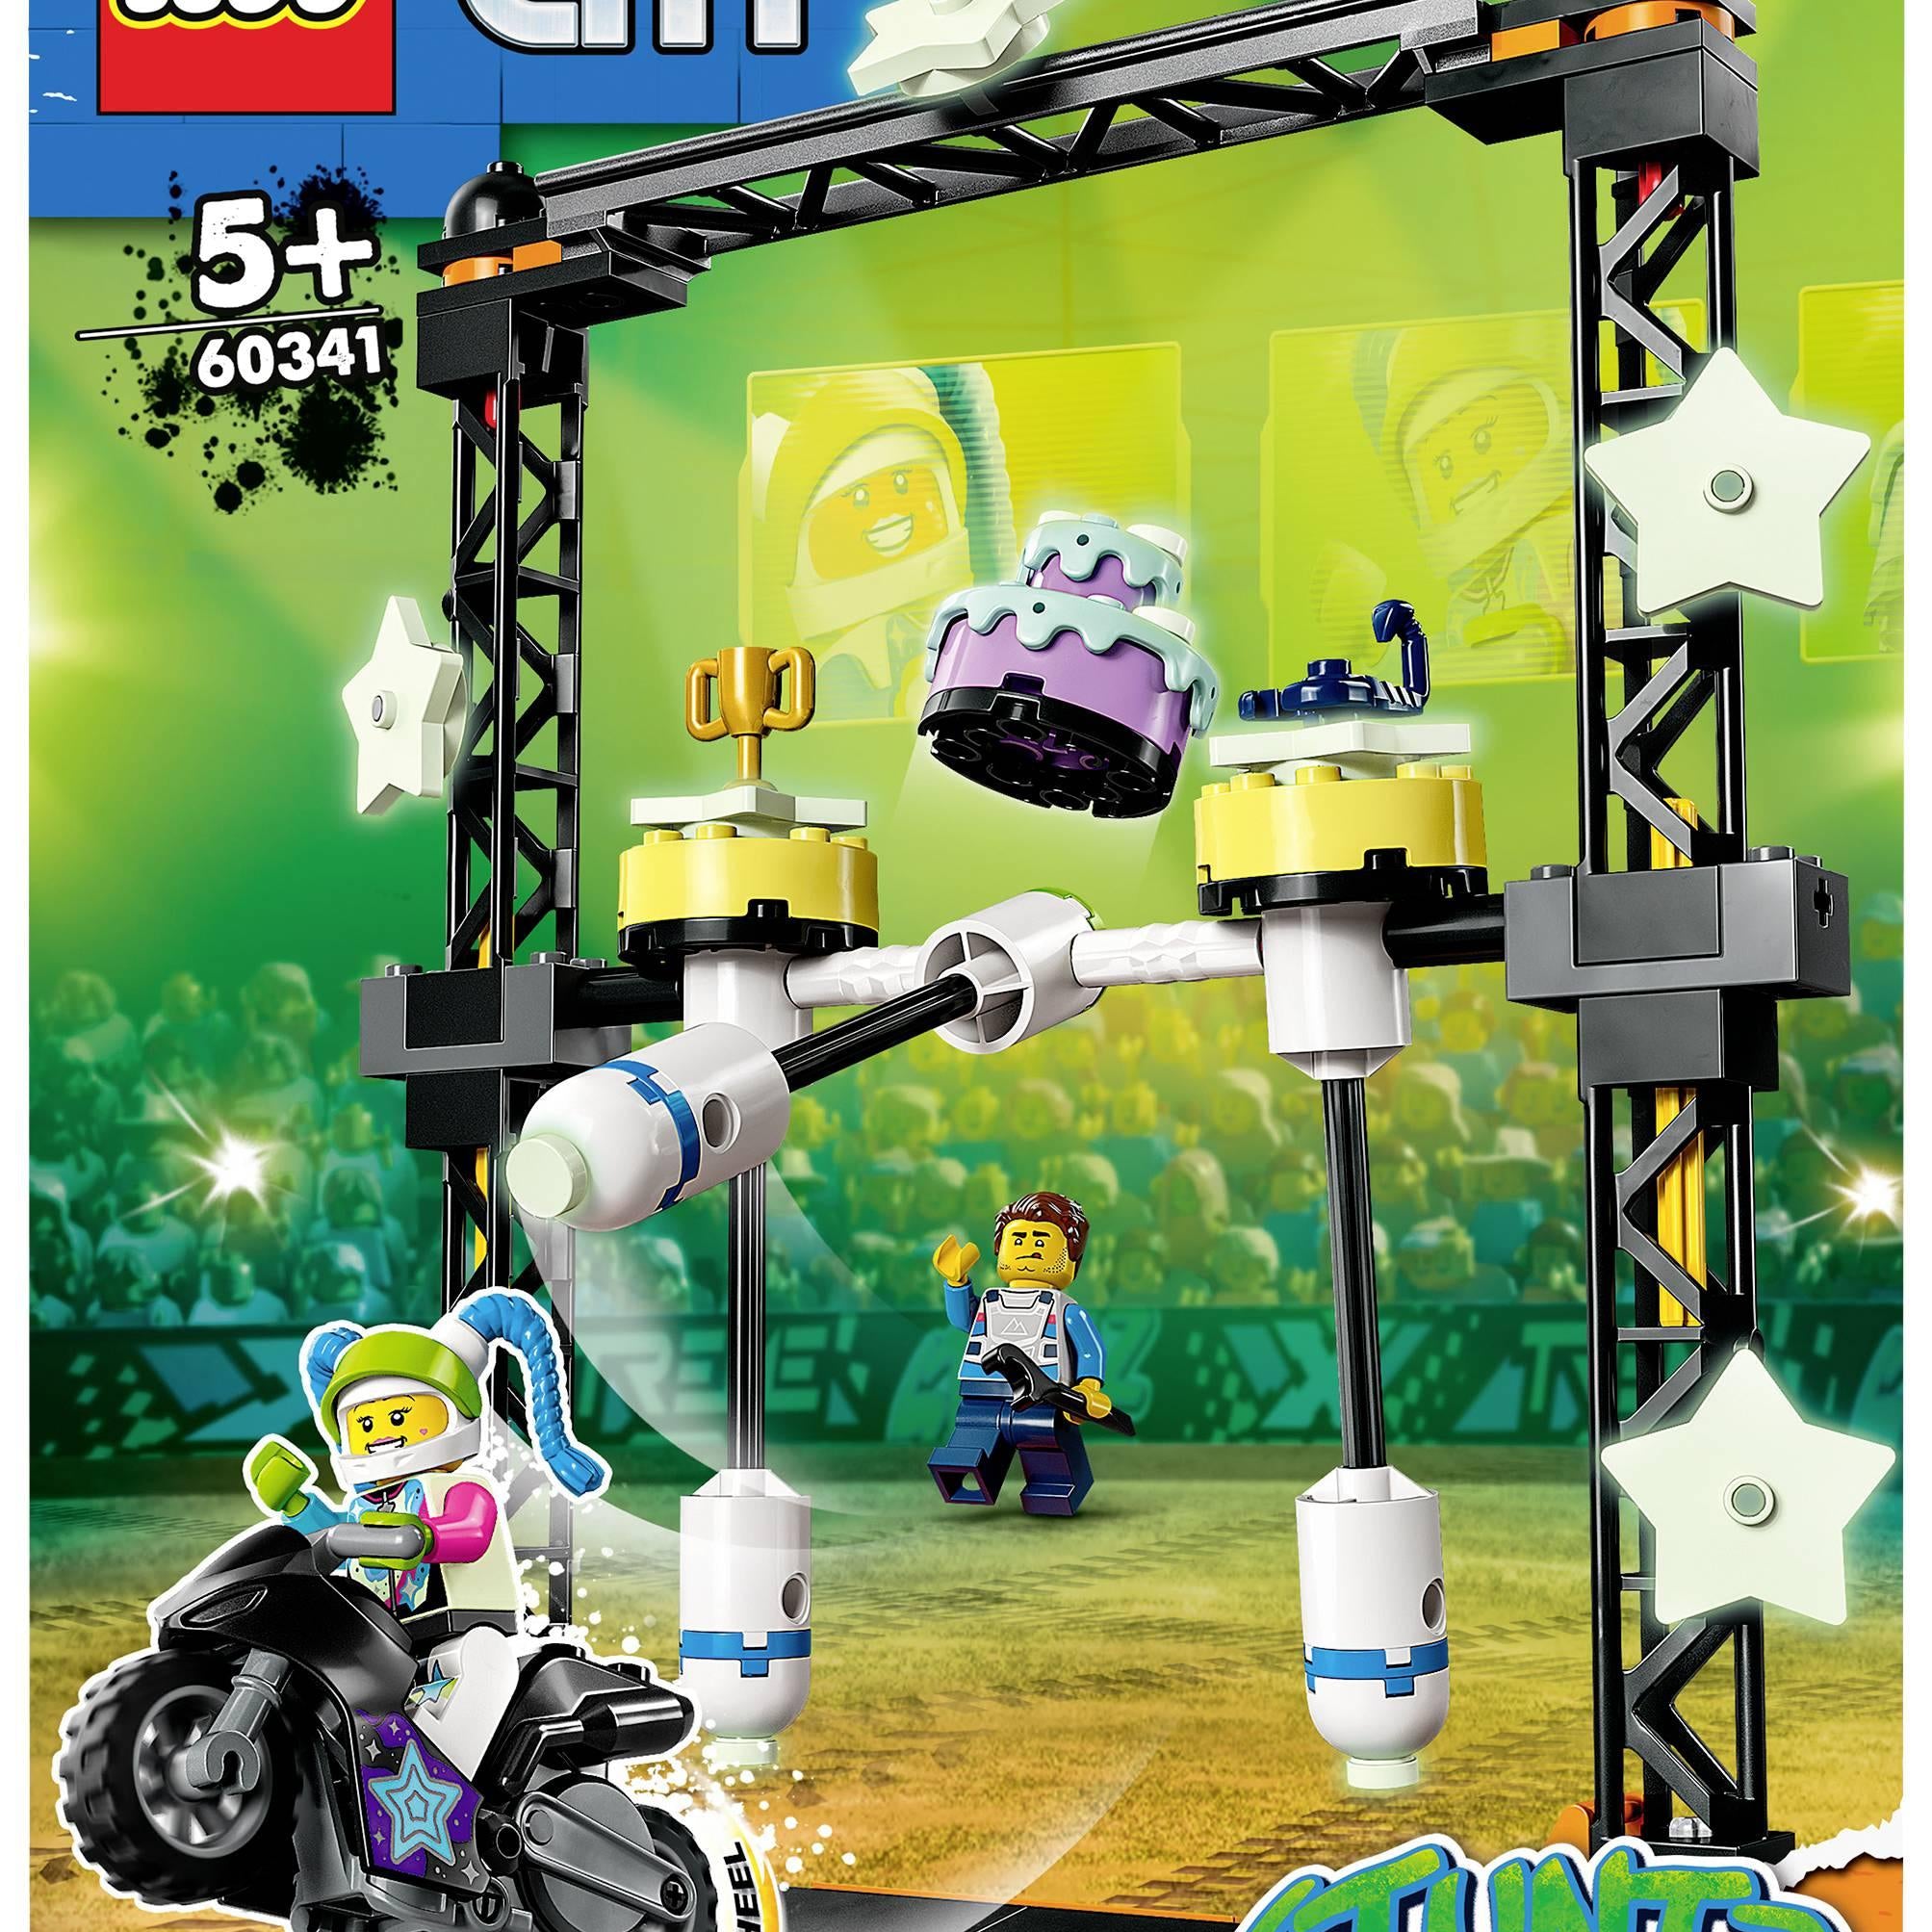 LEGO® CITY Turn-around stunt challenge - Ourkids - Lego